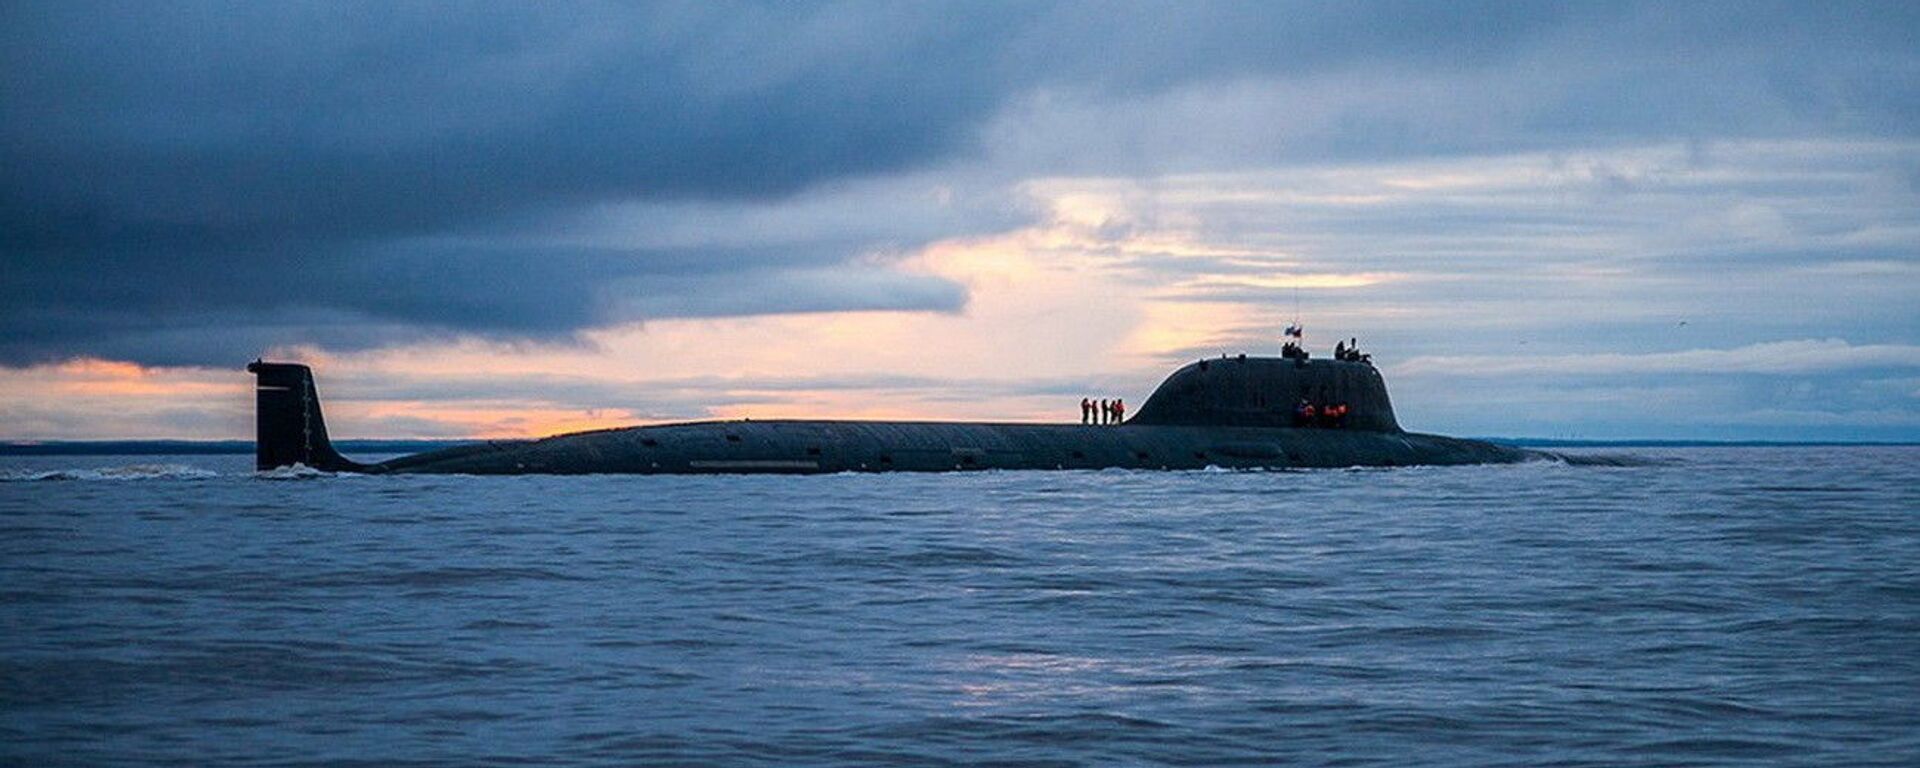 Атомная подводная лодка Северного флота «Северодвинск» - Sputnik Azərbaycan, 1920, 06.10.2021